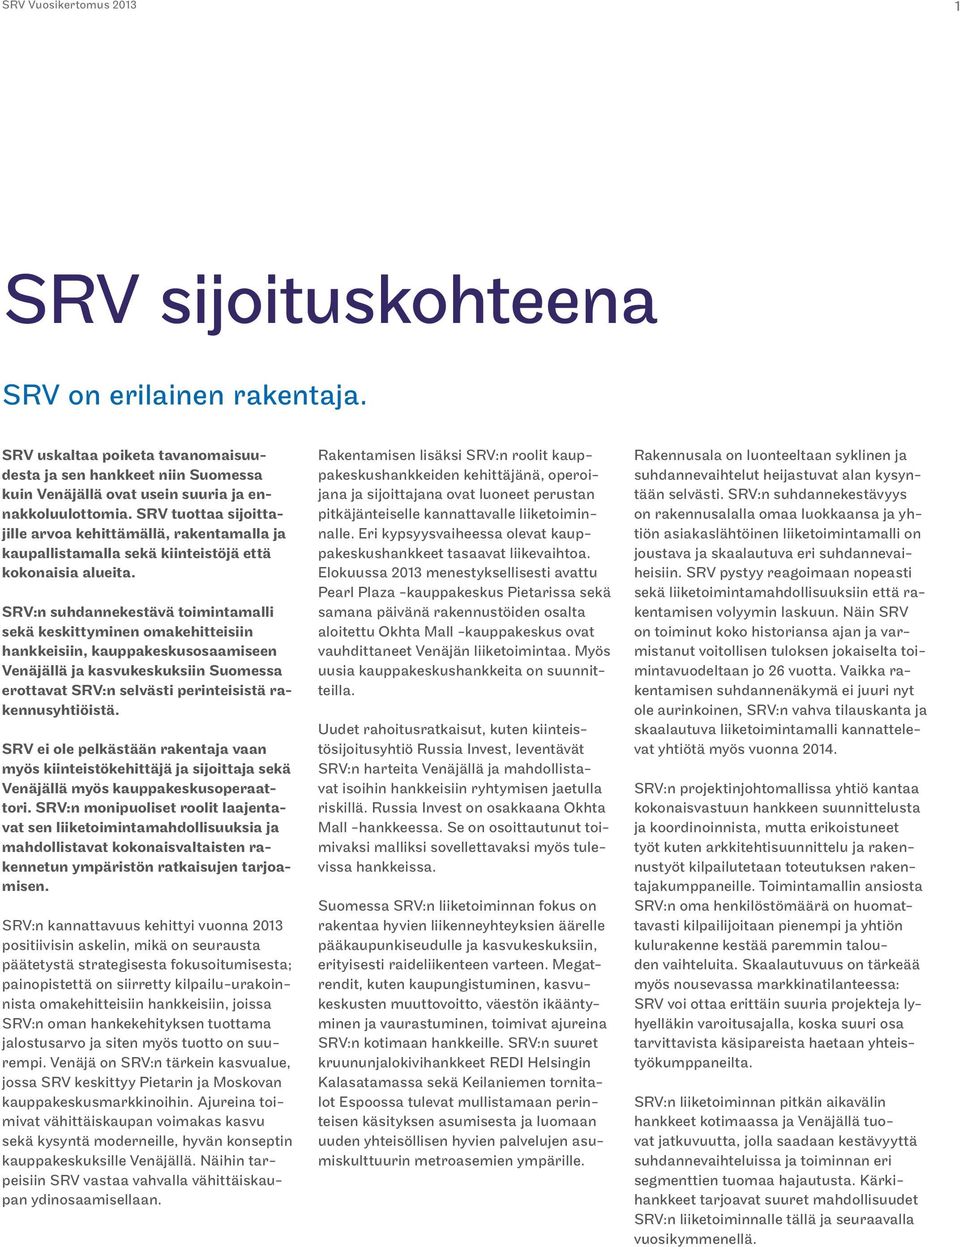 SRV:n suhdannekestävä toimintamalli sekä keskittyminen omakehitteisiin hankkeisiin, kauppakeskusosaamiseen Venäjällä ja kasvukeskuksiin Suomessa erottavat SRV:n selvästi perinteisistä